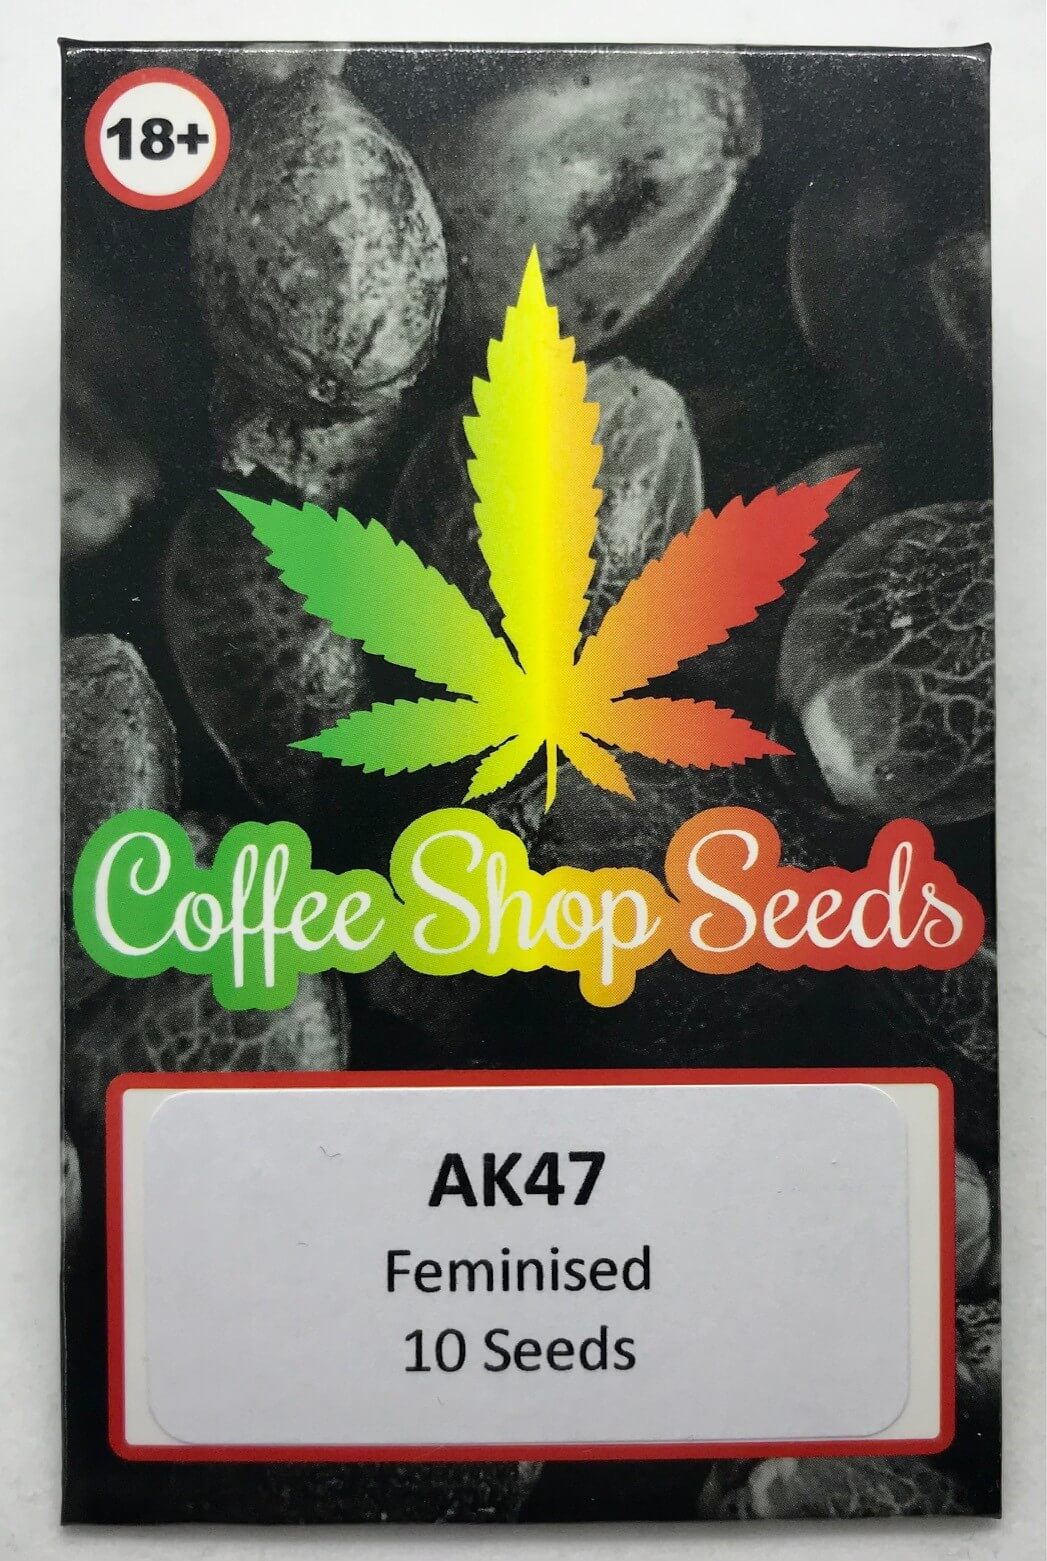 AK47 feminised weed seeds